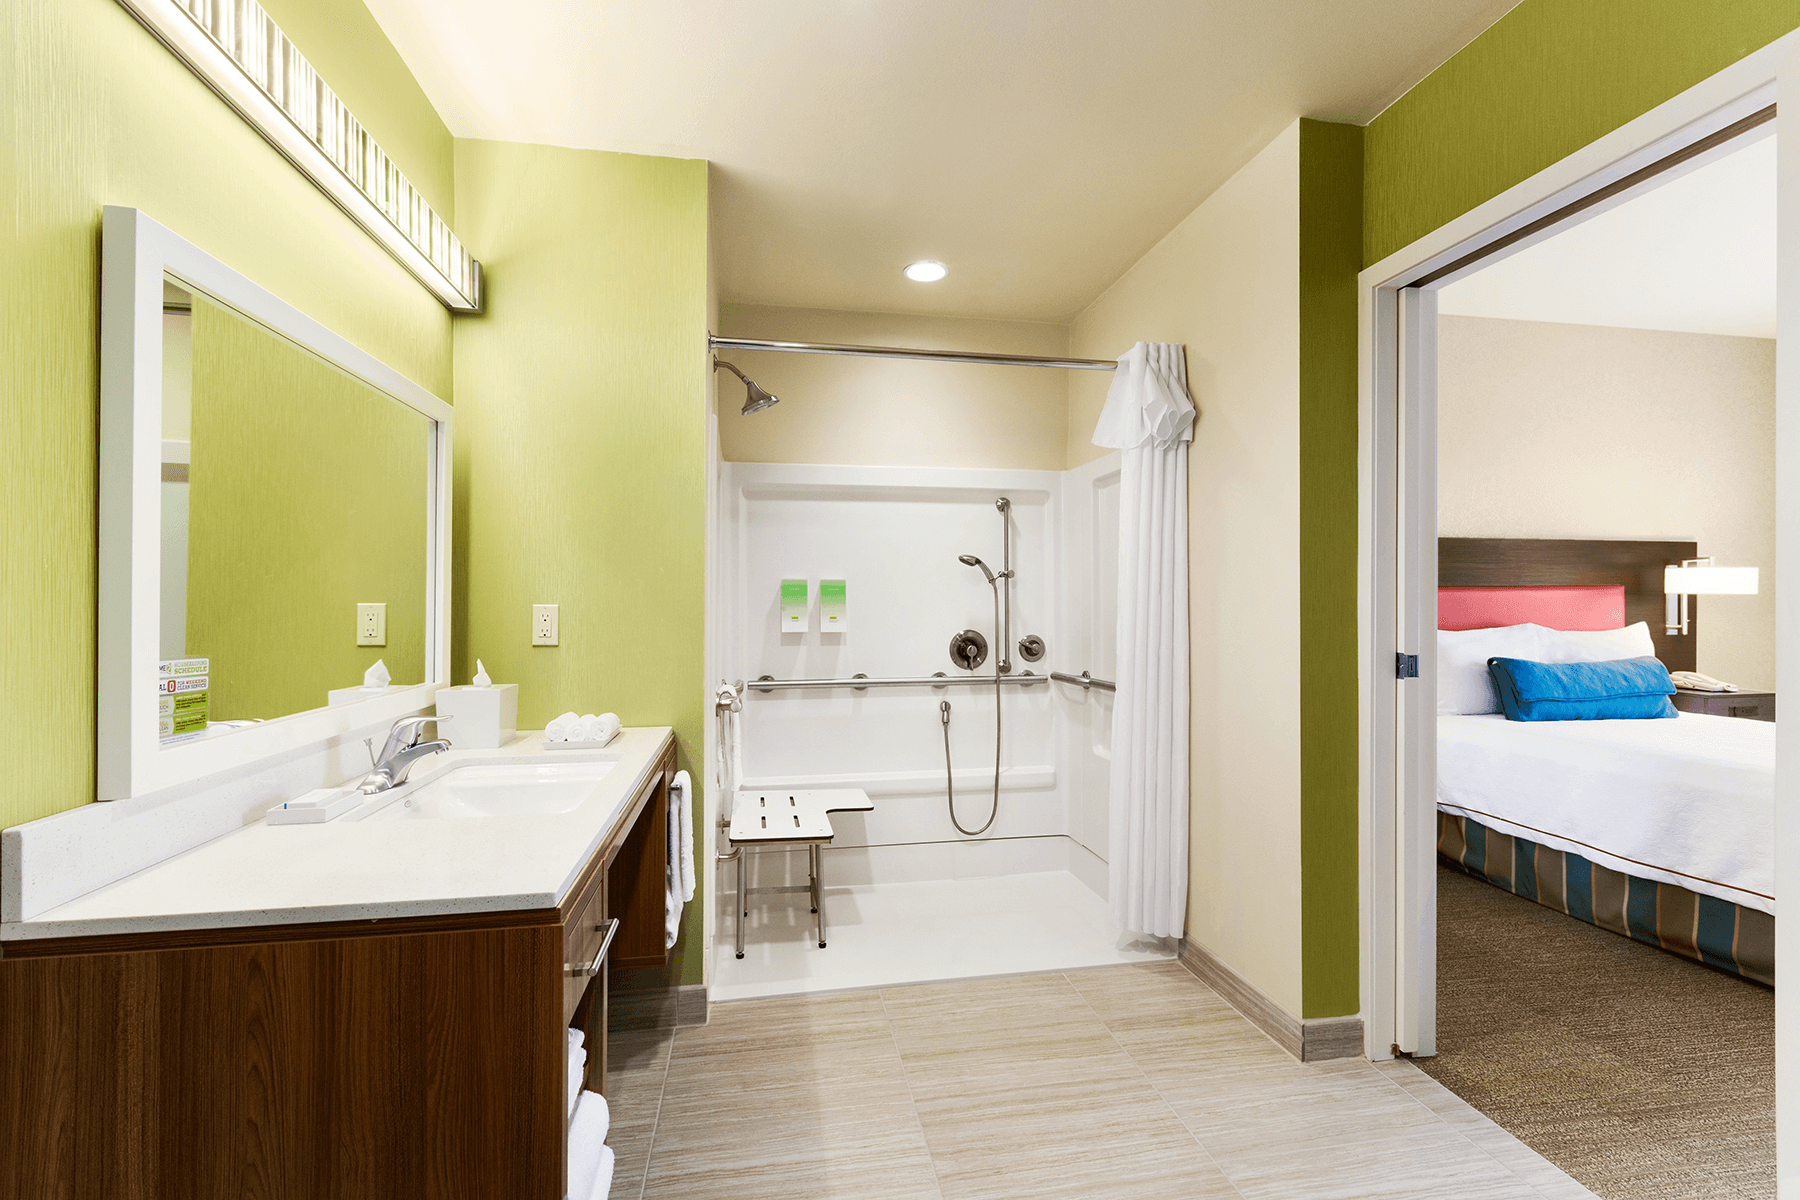  Home 2 Suites Accessible Bathroom interior 